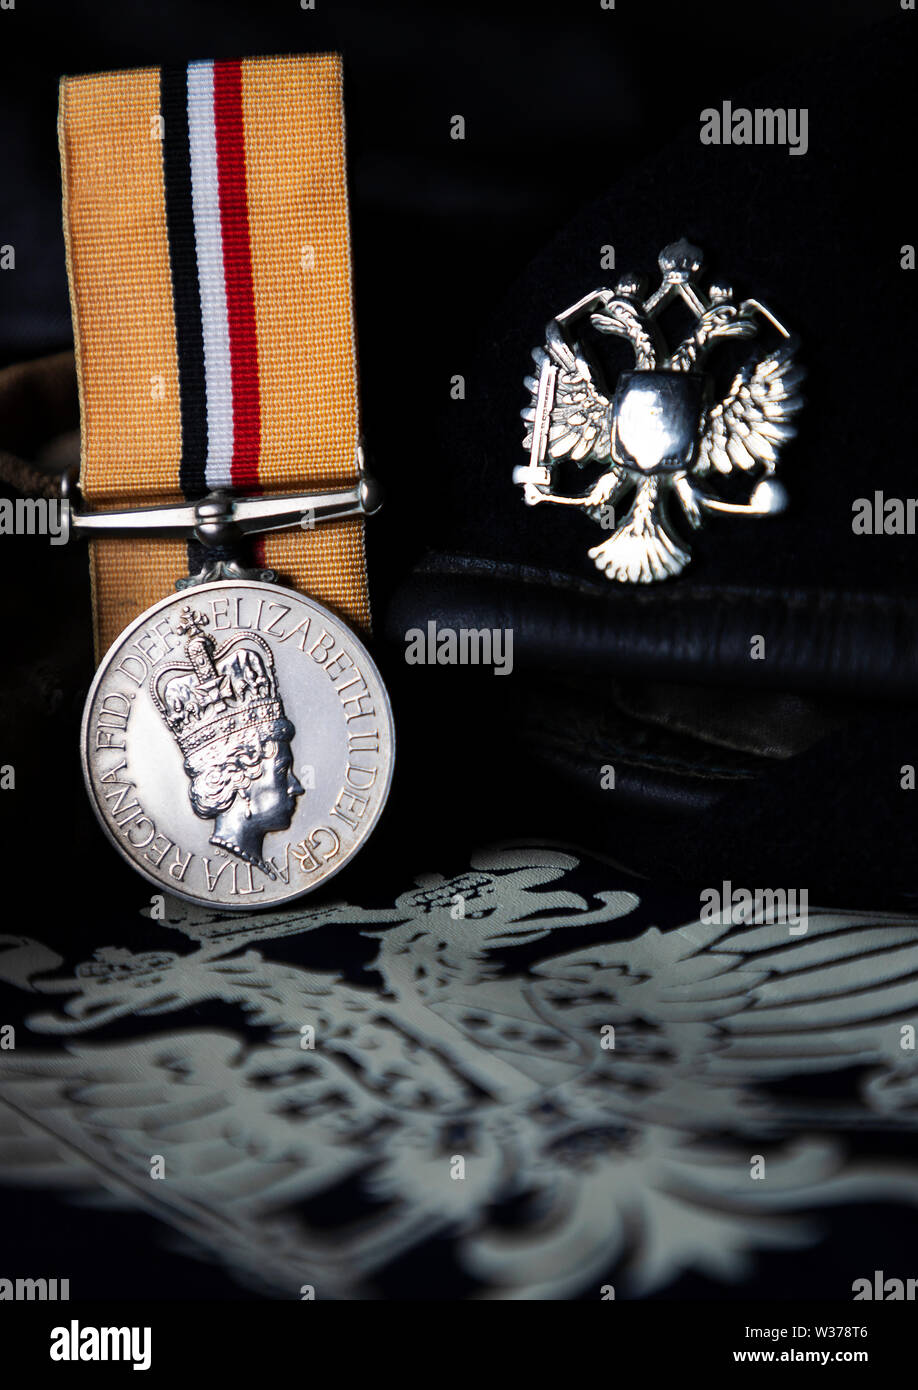 Foto: © Jamie Callister. Irak Medaille und mützenabzeichen der 1 Queen's Dragoon Guards, Corwen, Denbighshire, North Wales, 6. Juli, 2019 Stockfoto